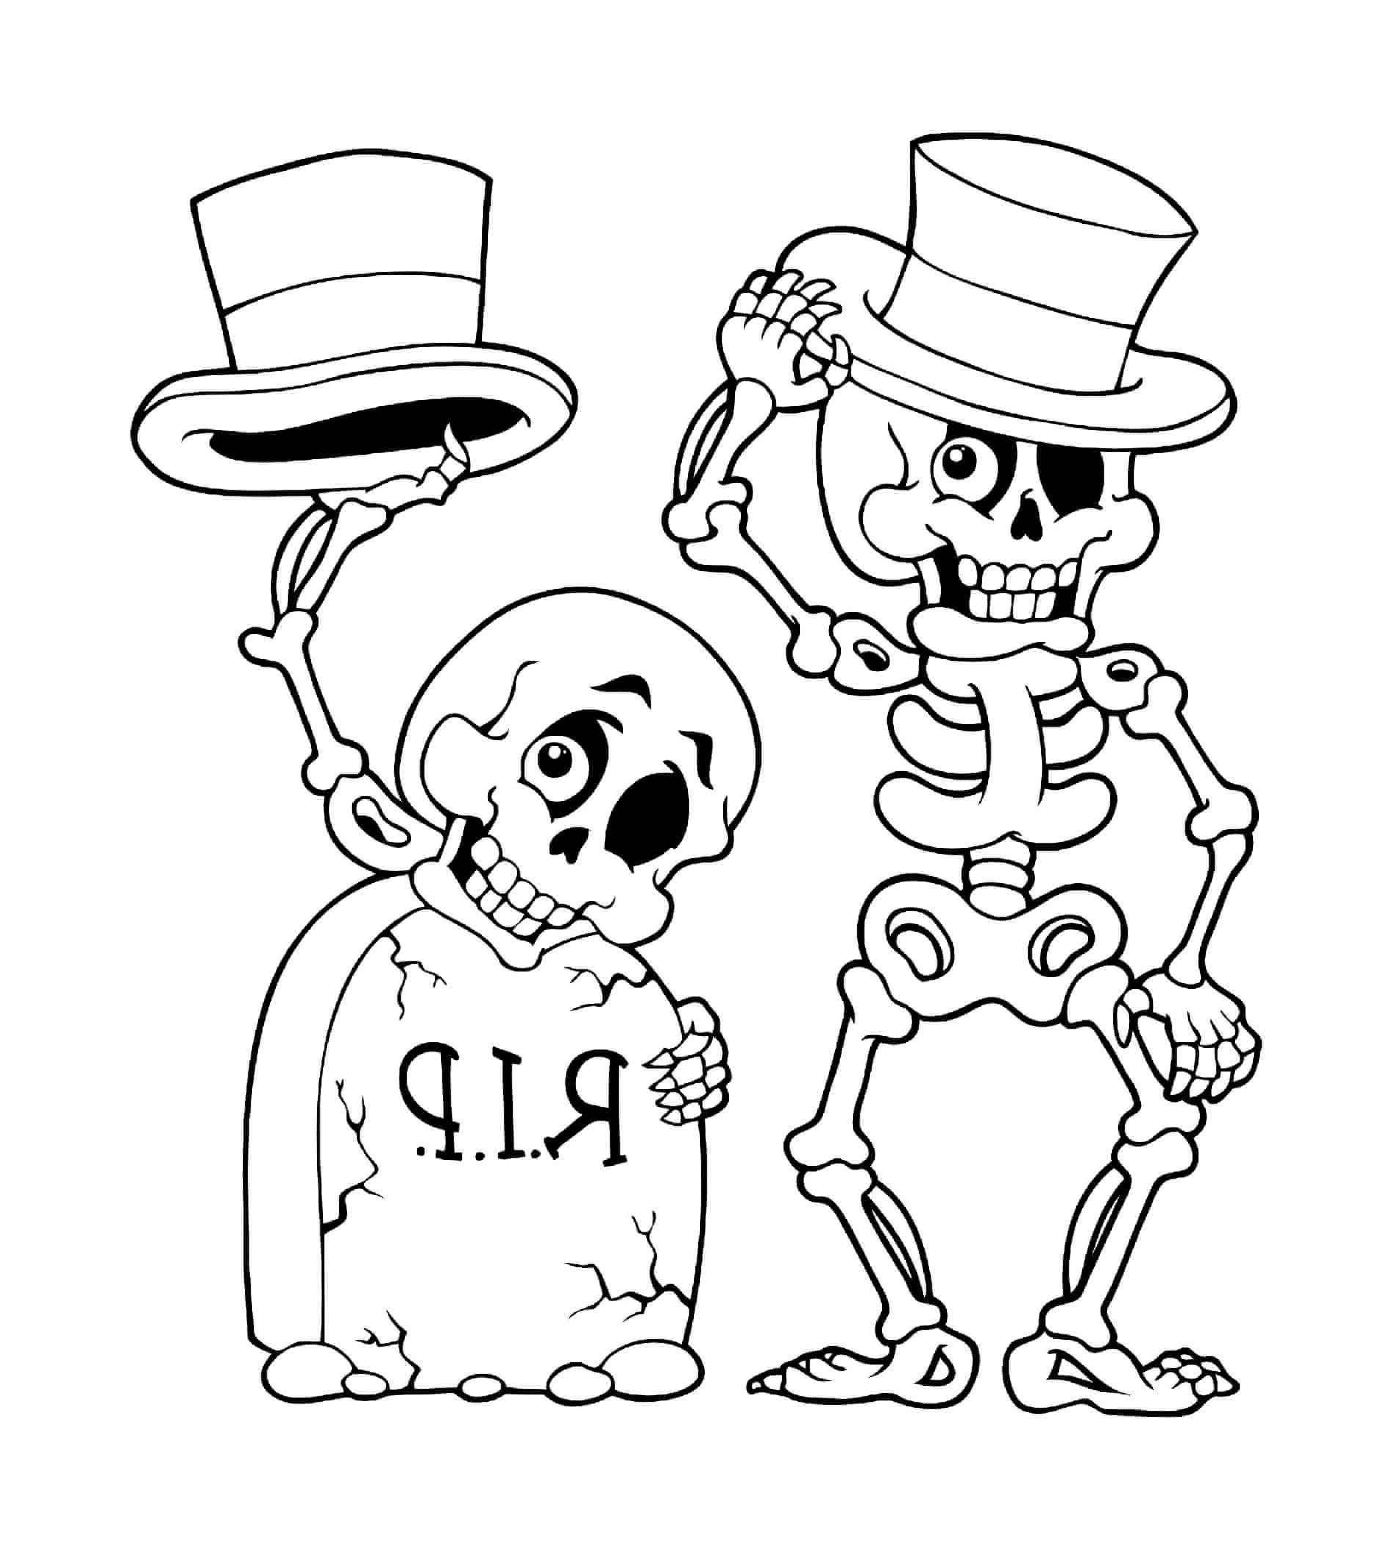  Хэллоуин, скелет и глава смерти 